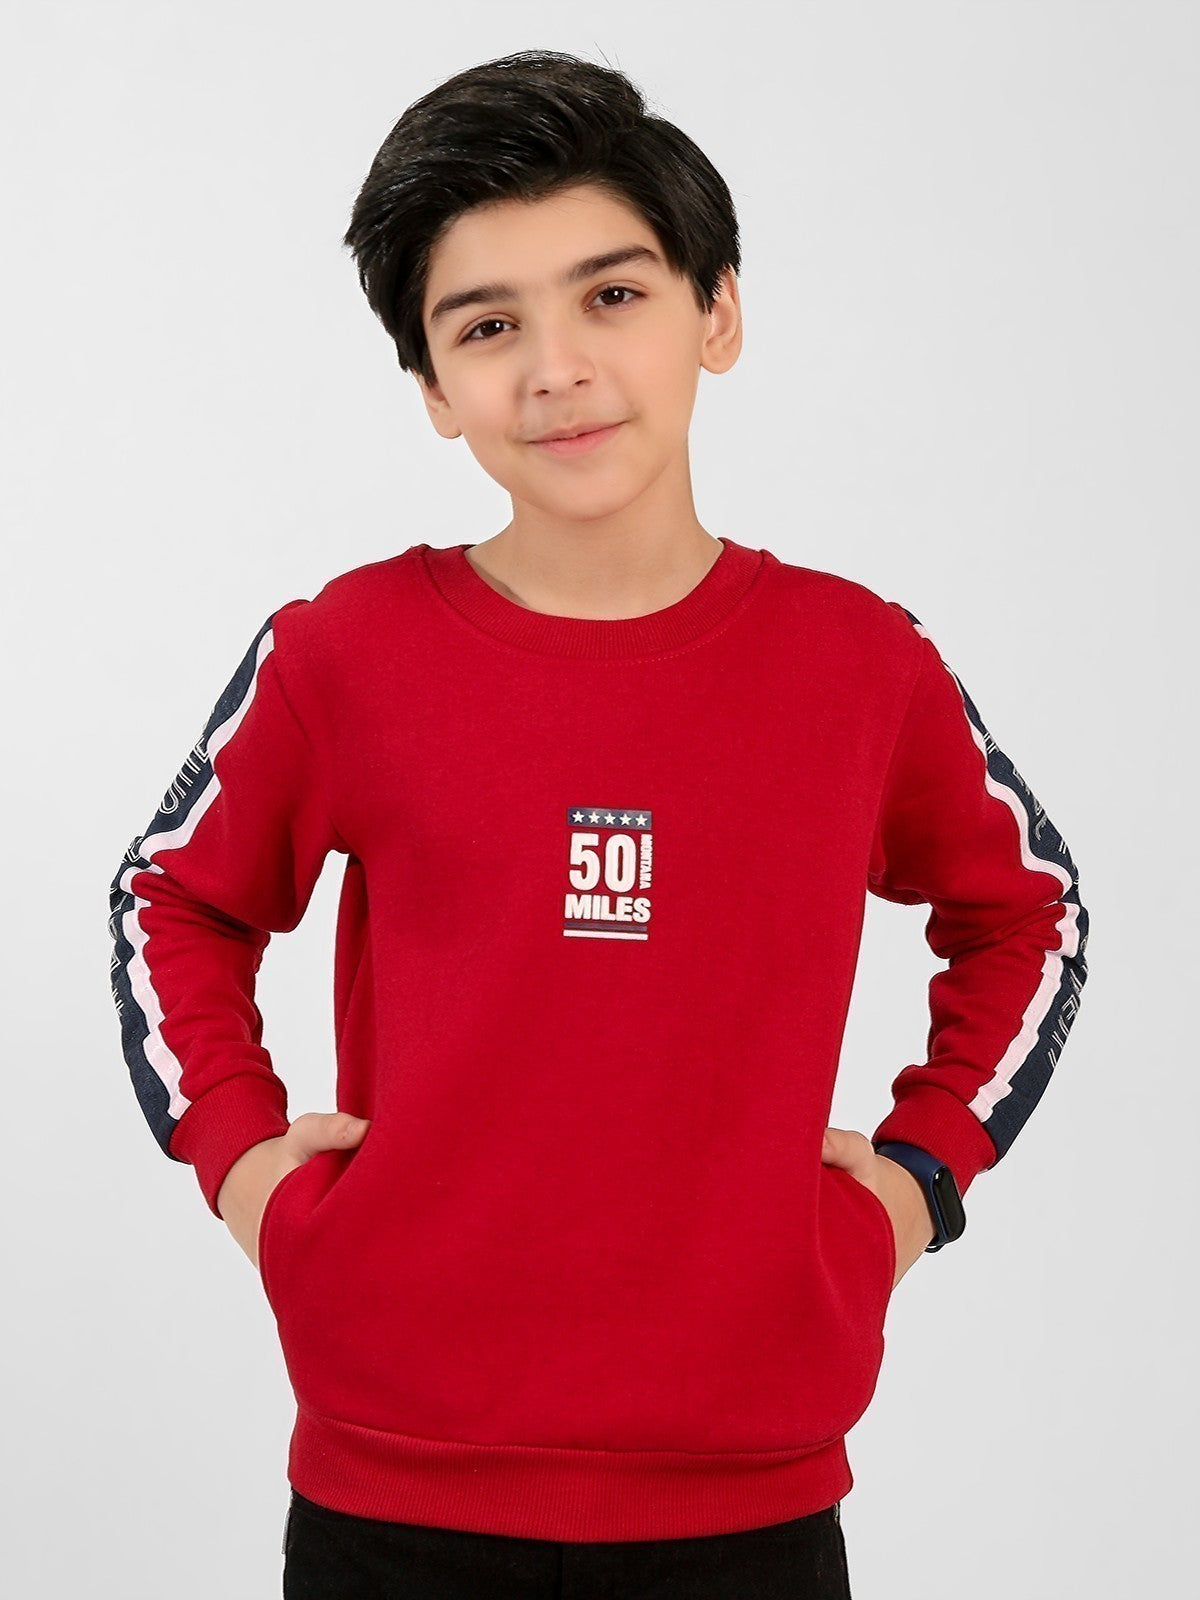 Boy's Maroon Sweatshirt - EBTSS20-002